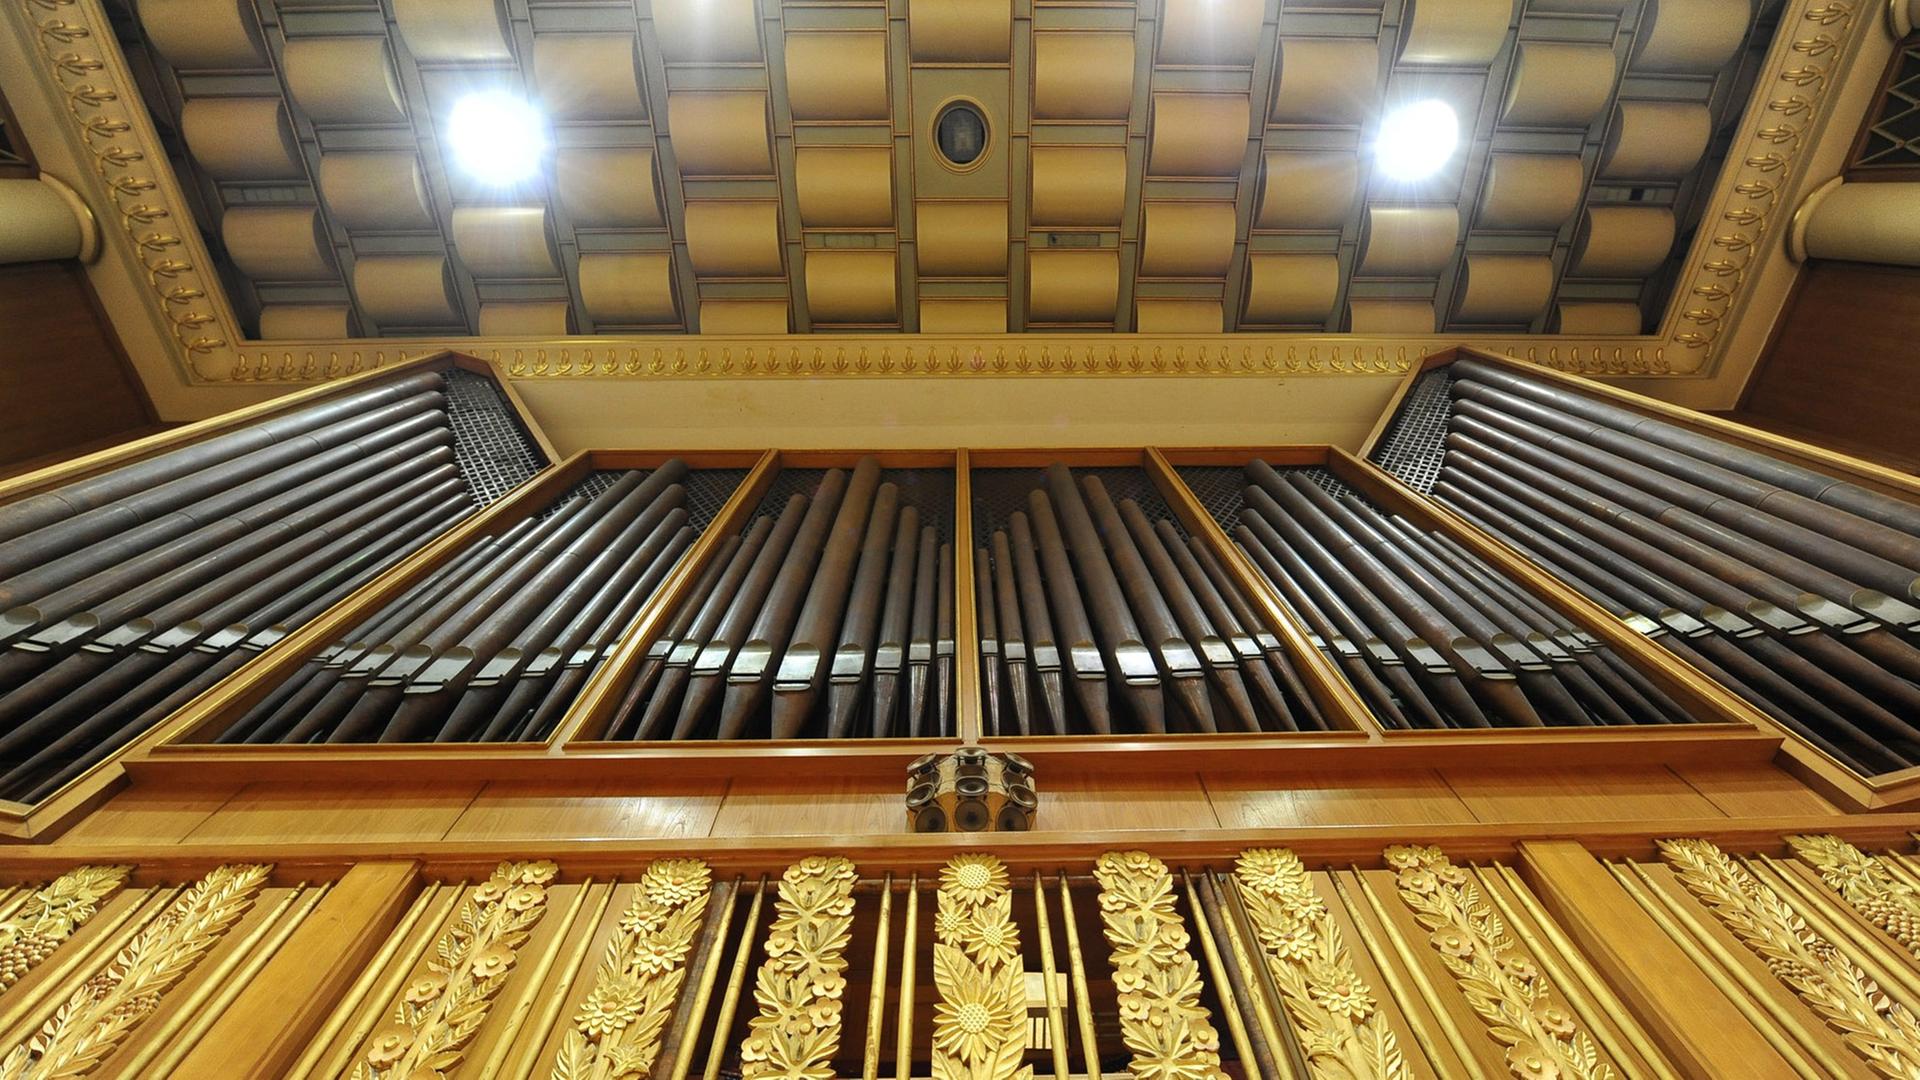 Die Orgel im großen Musiksaal im Funkhaus Berlin in der Nalepastraße in Berlin, aufgenommen am 21.04.2009.